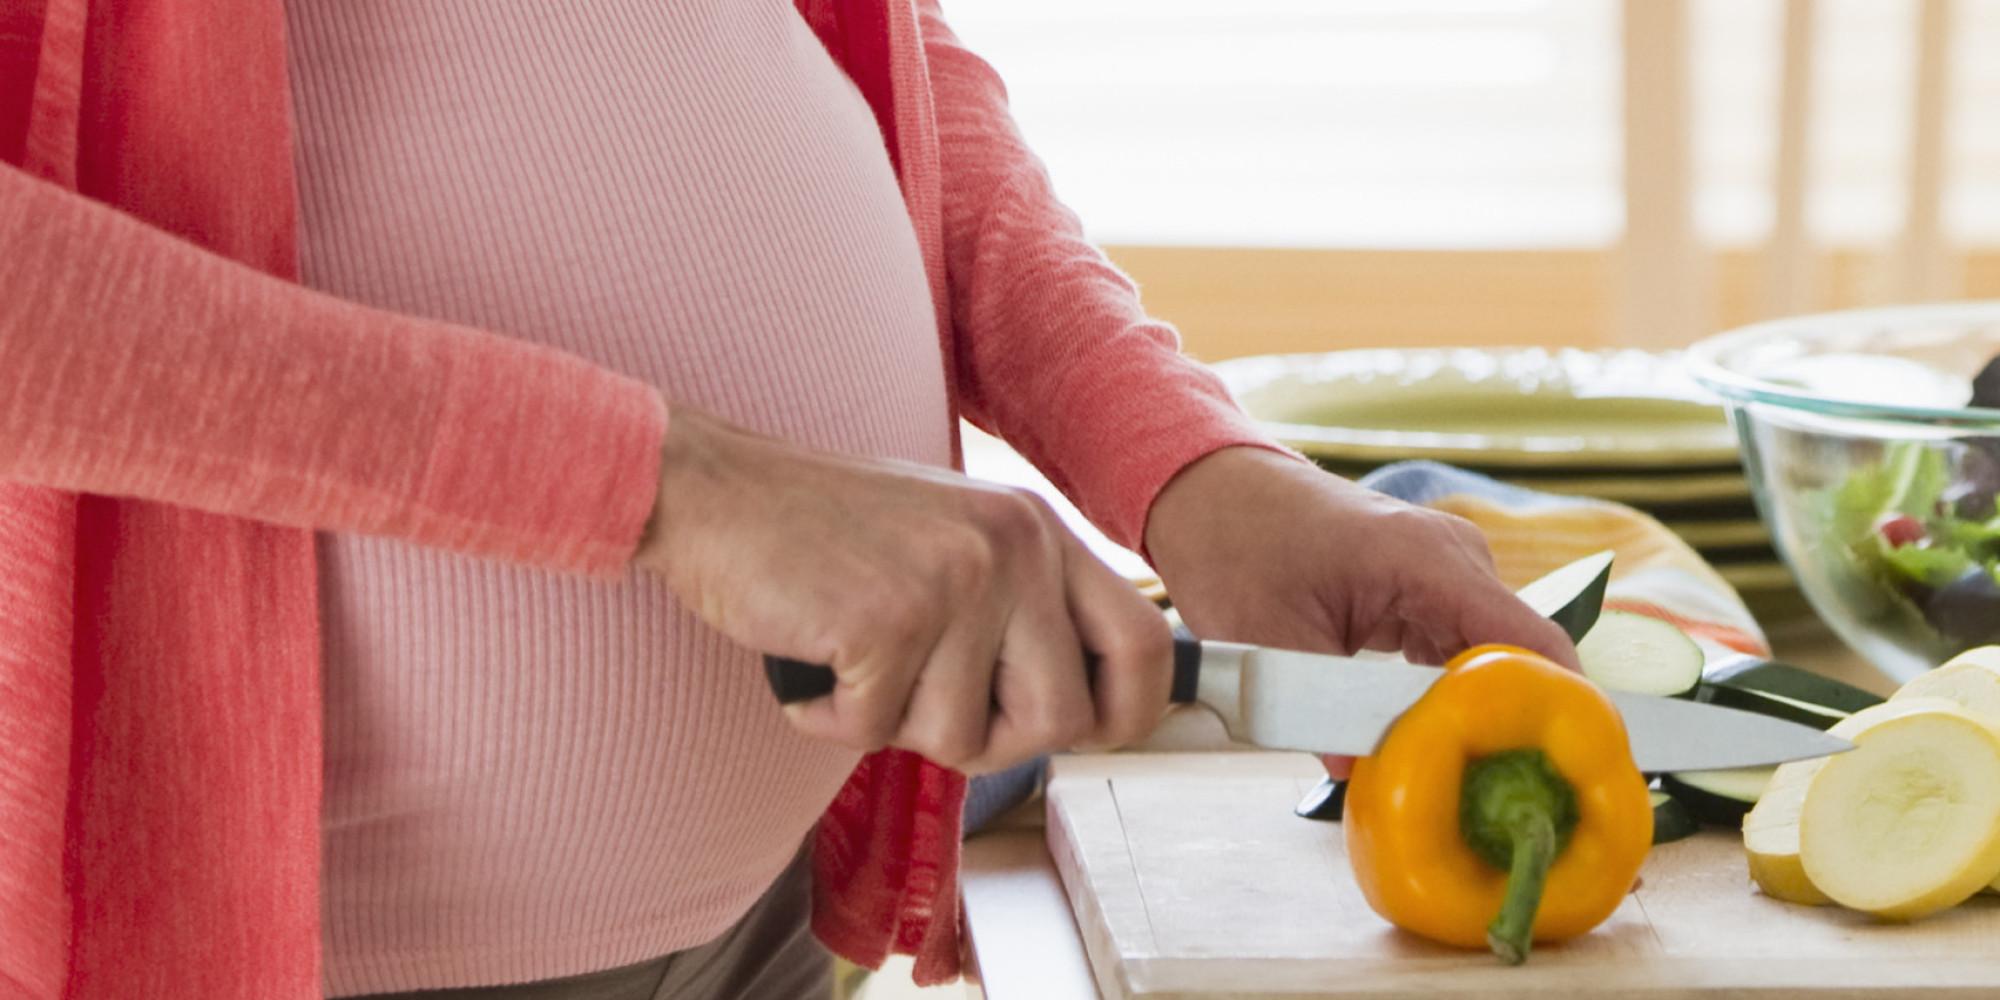 Trebuie respectat postul în timpul sarcinii? Părerea medicului și a preotului